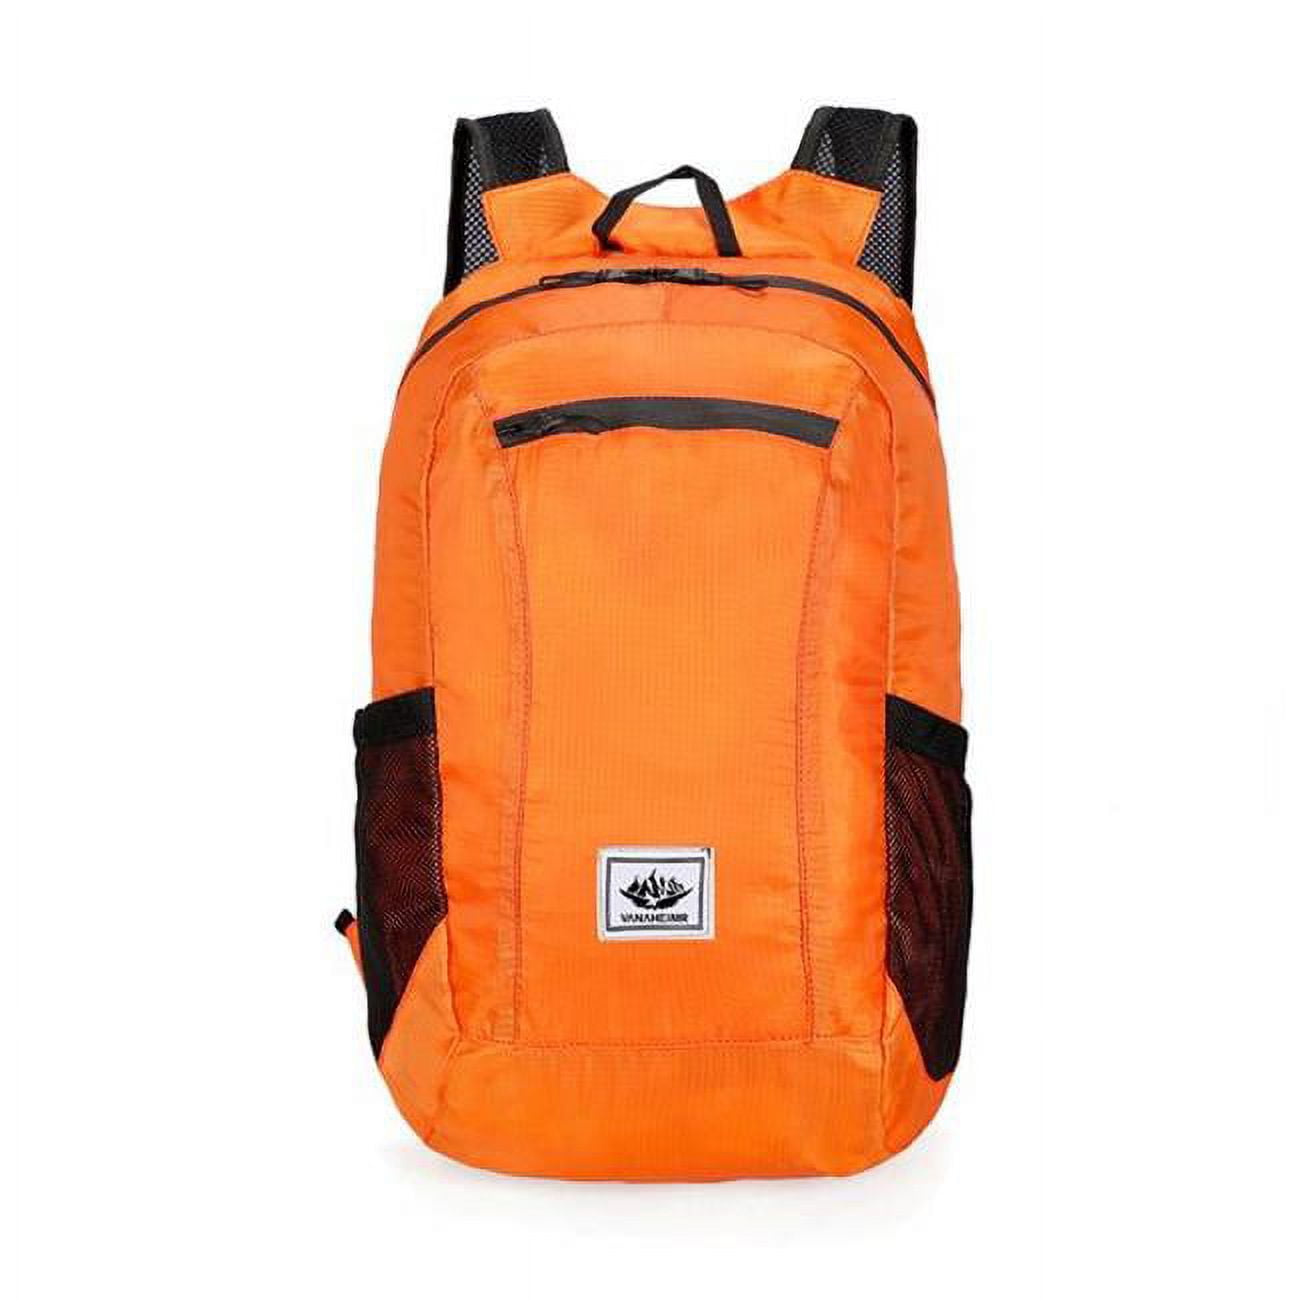 Picture of 3P Experts 3PX-FOLDINGBAG-Orange HIKE Back- Folding Backpack, Orange